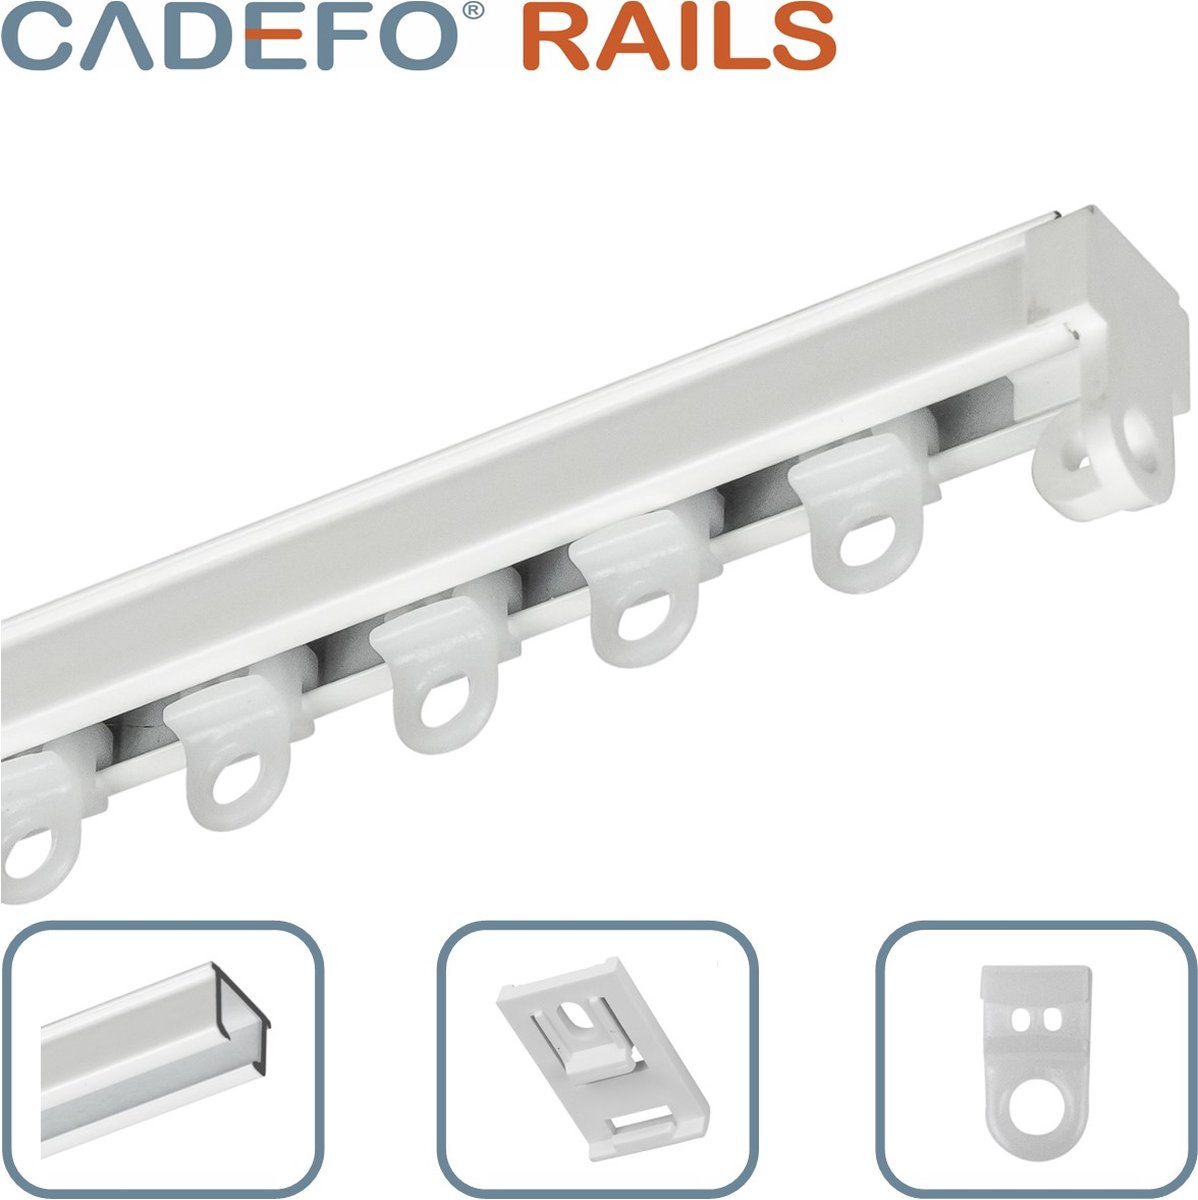 CADEFO RAILS (501 - 550 cm) Gordijnrails - Compleet op maat! - UIT 1 STUK - Leverbaar tot 6 meter - Plafondbevestiging - Lengte 520 cm